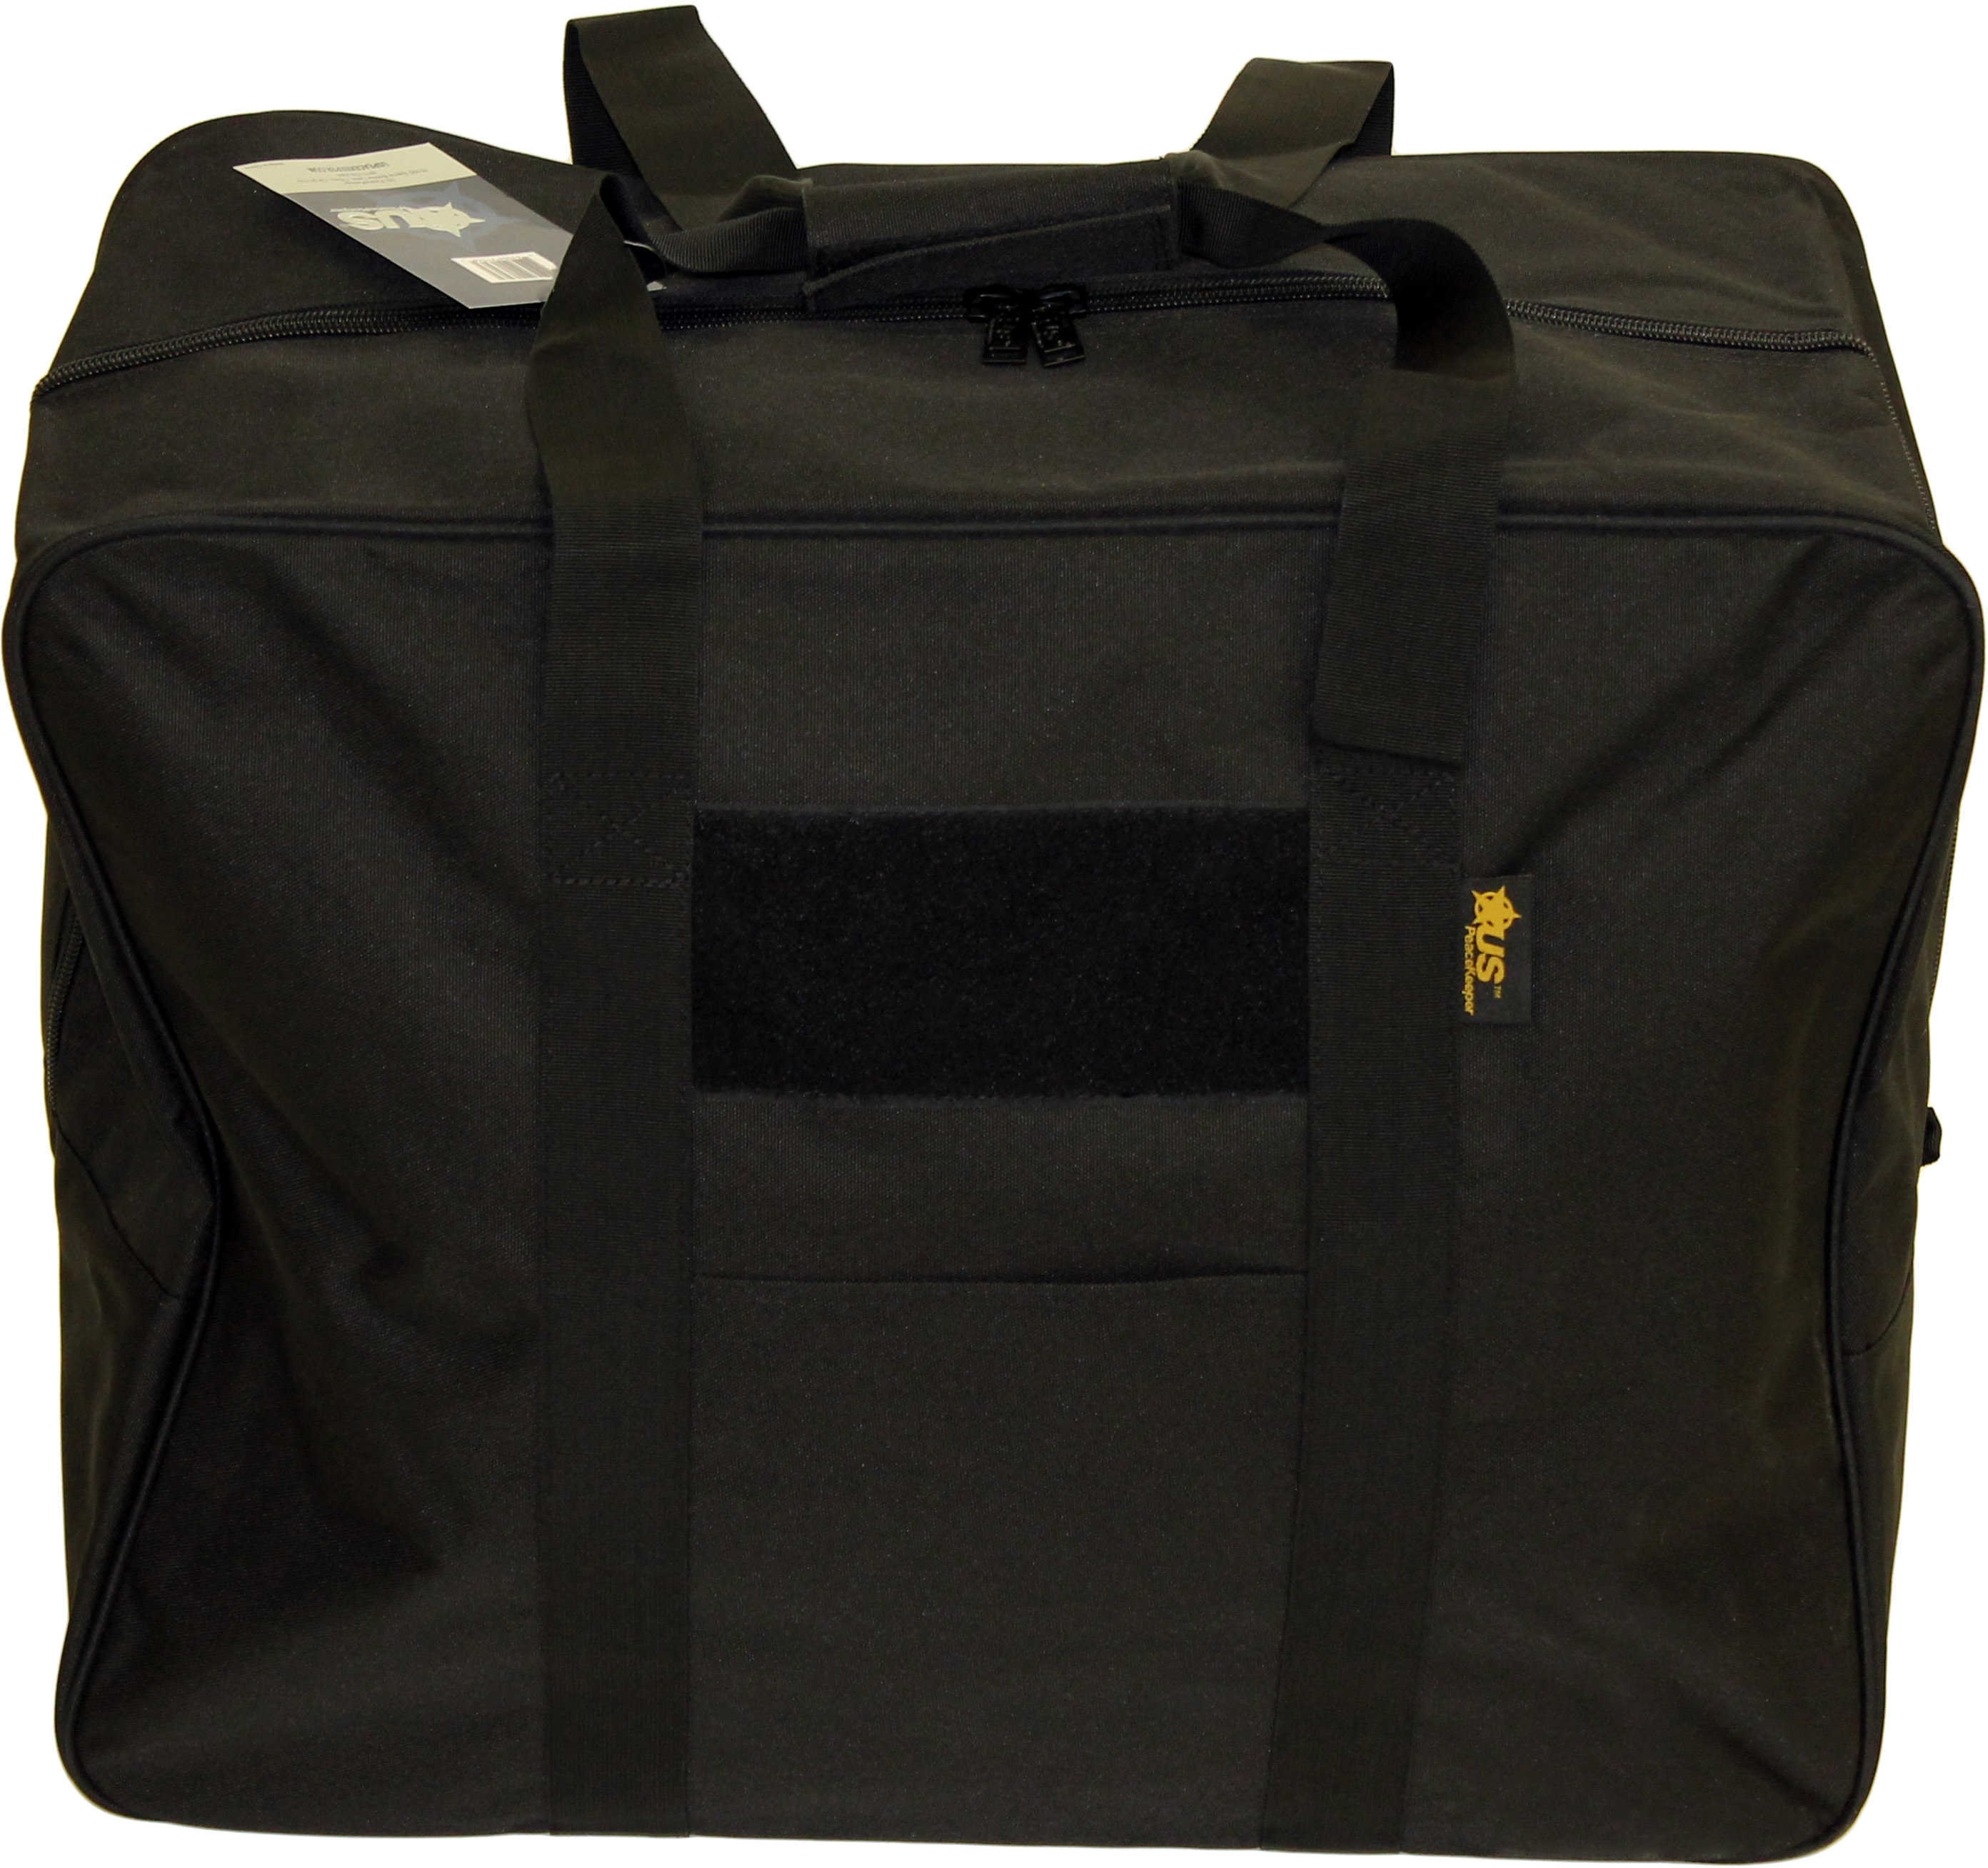 US Peacekeeper Tactical Vest Bag, Black Md: P21326